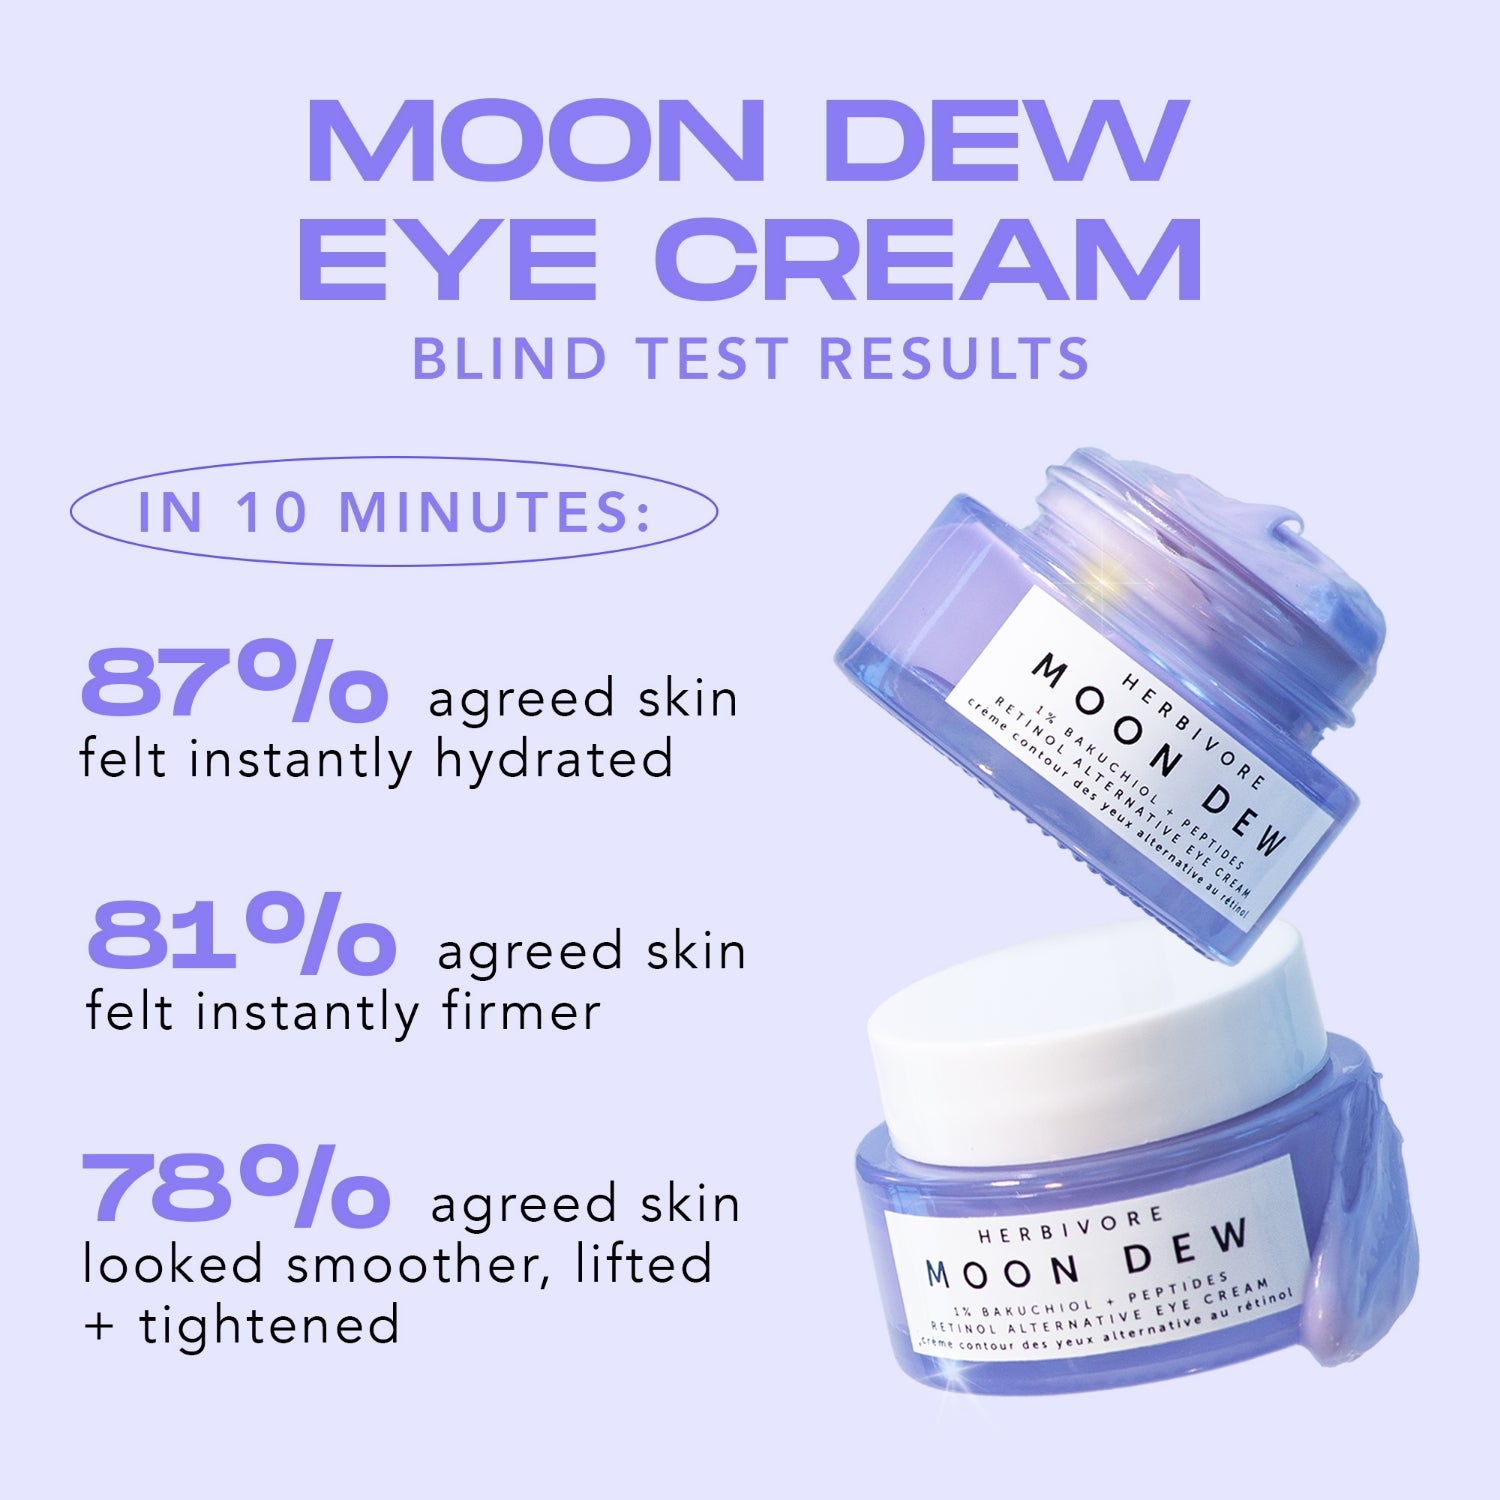 MOON DEW 1% Bakuchiol + Peptides Retinol Alternative Firming Eye Cream